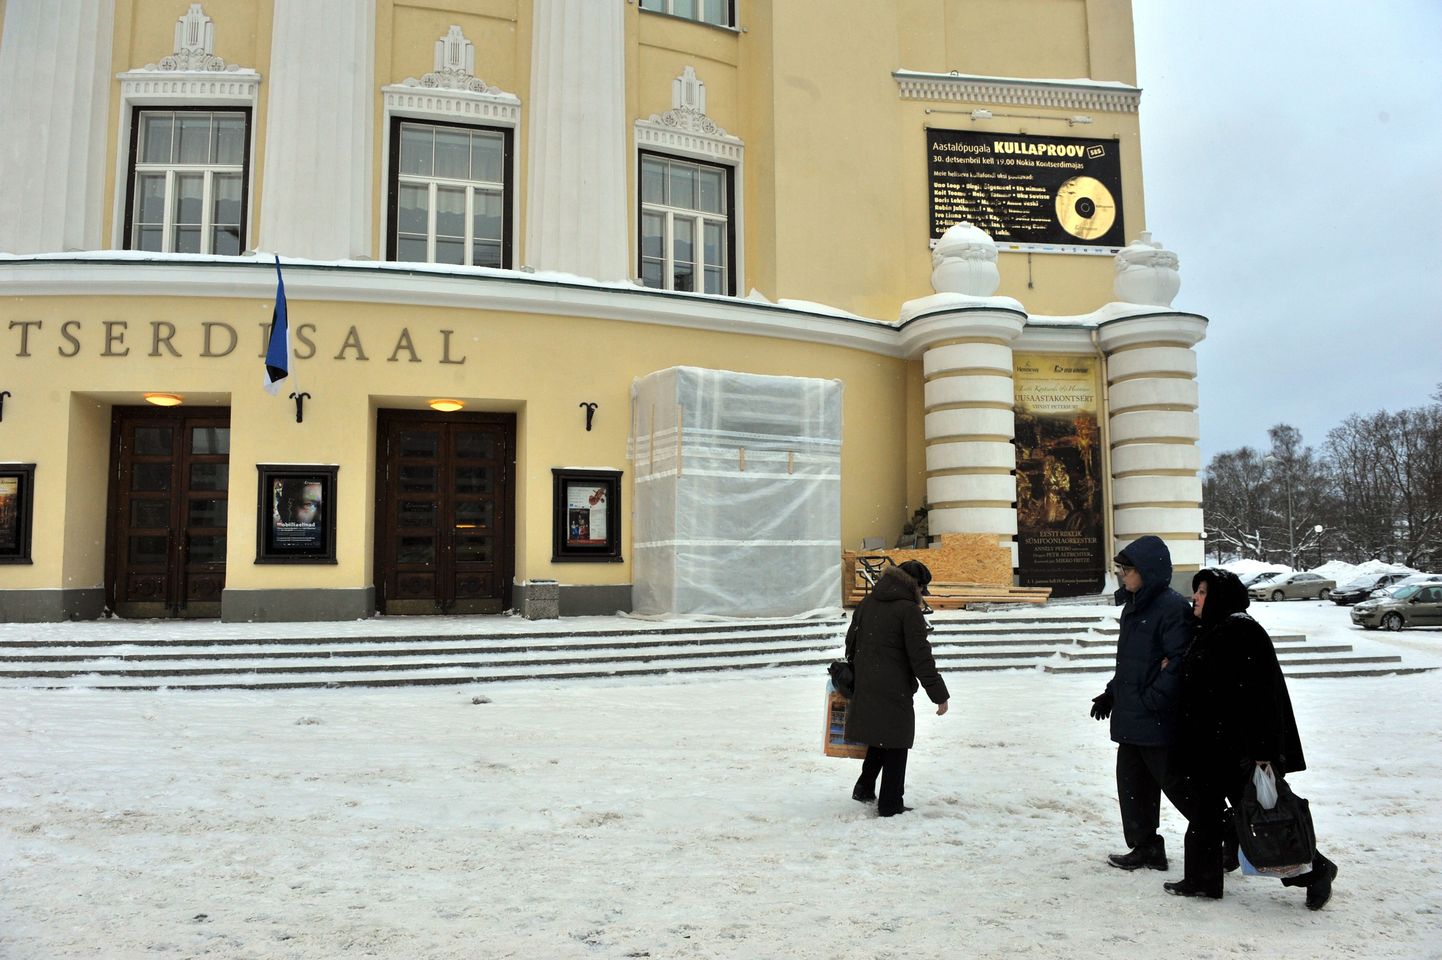 Банкомат, в котором премьер-министр снял первые евро, уберут, и стены здания Национальной оперы приведут в порядок.